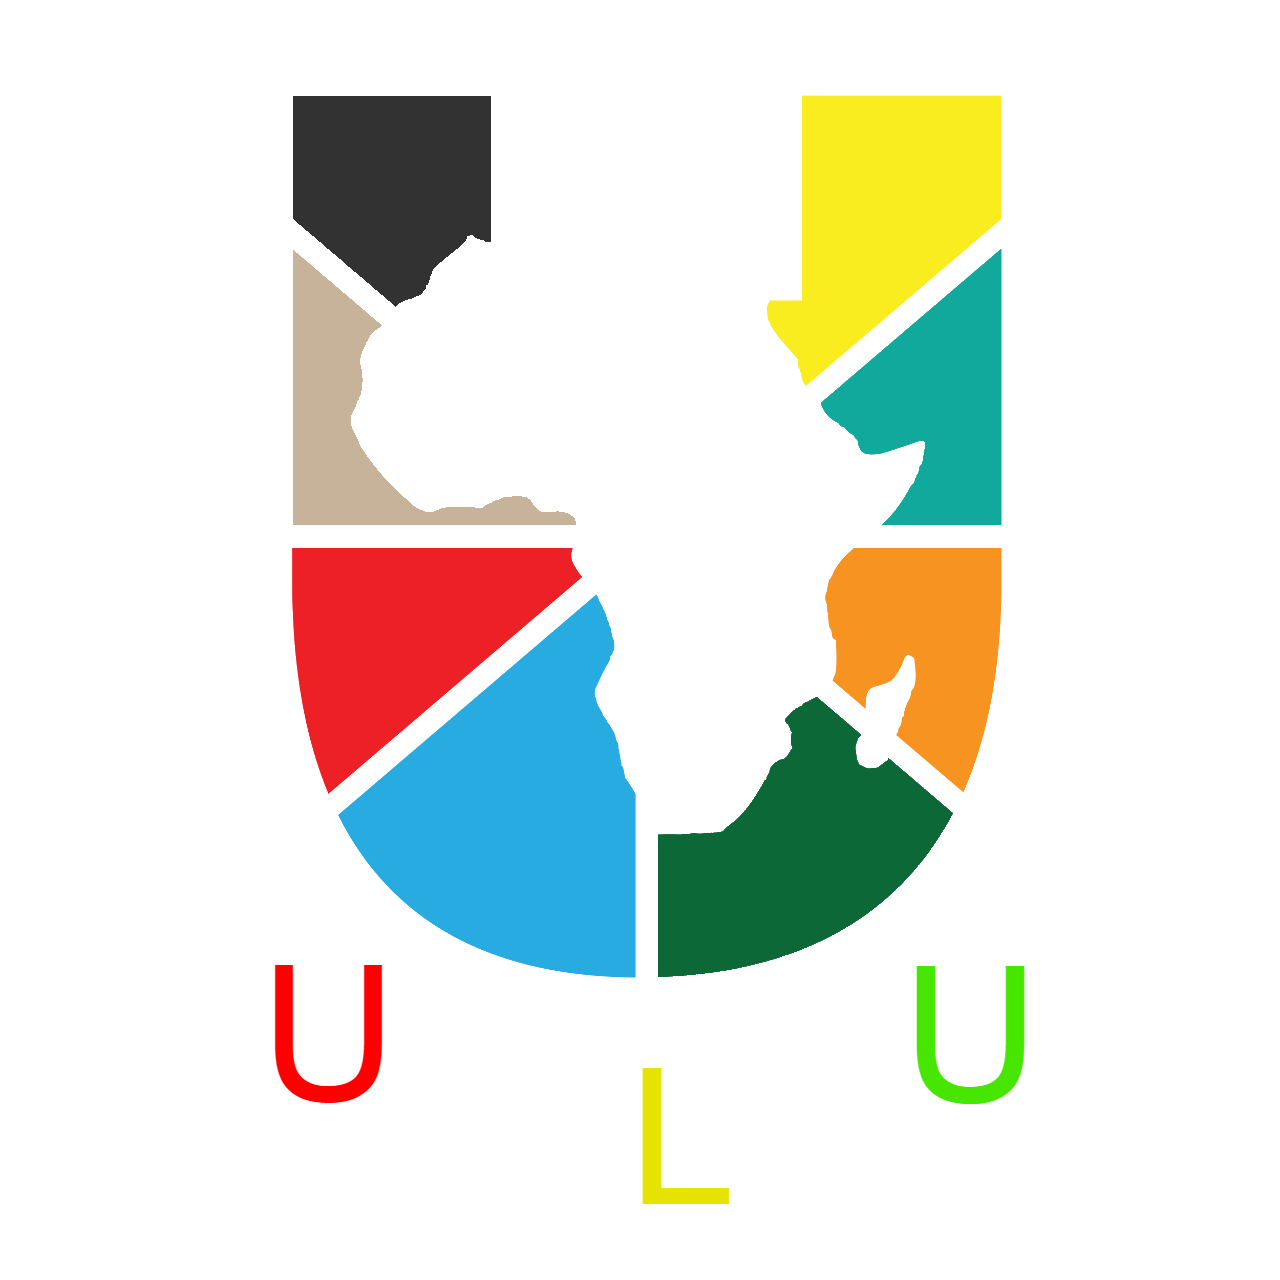 ULU